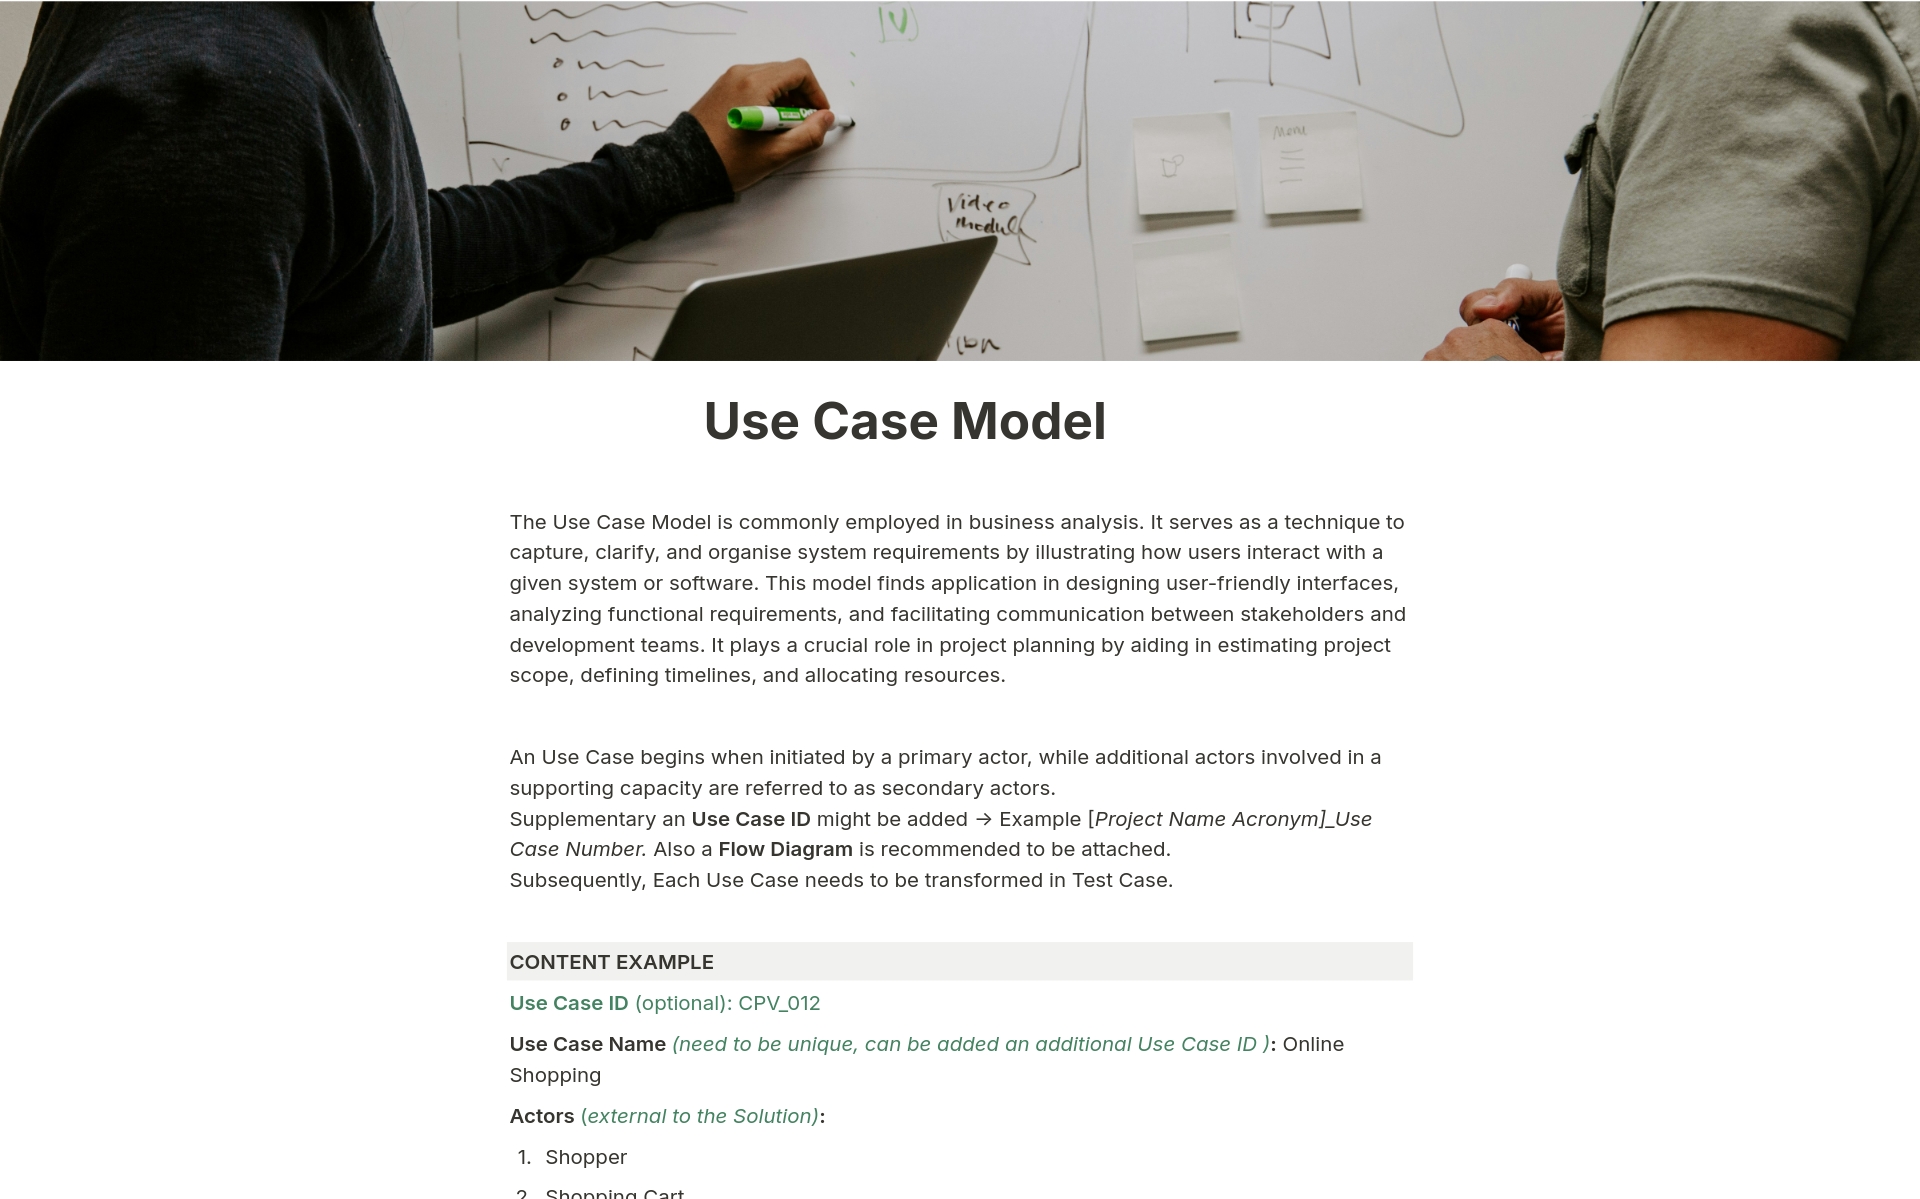 En förhandsgranskning av mallen för Use Case Model